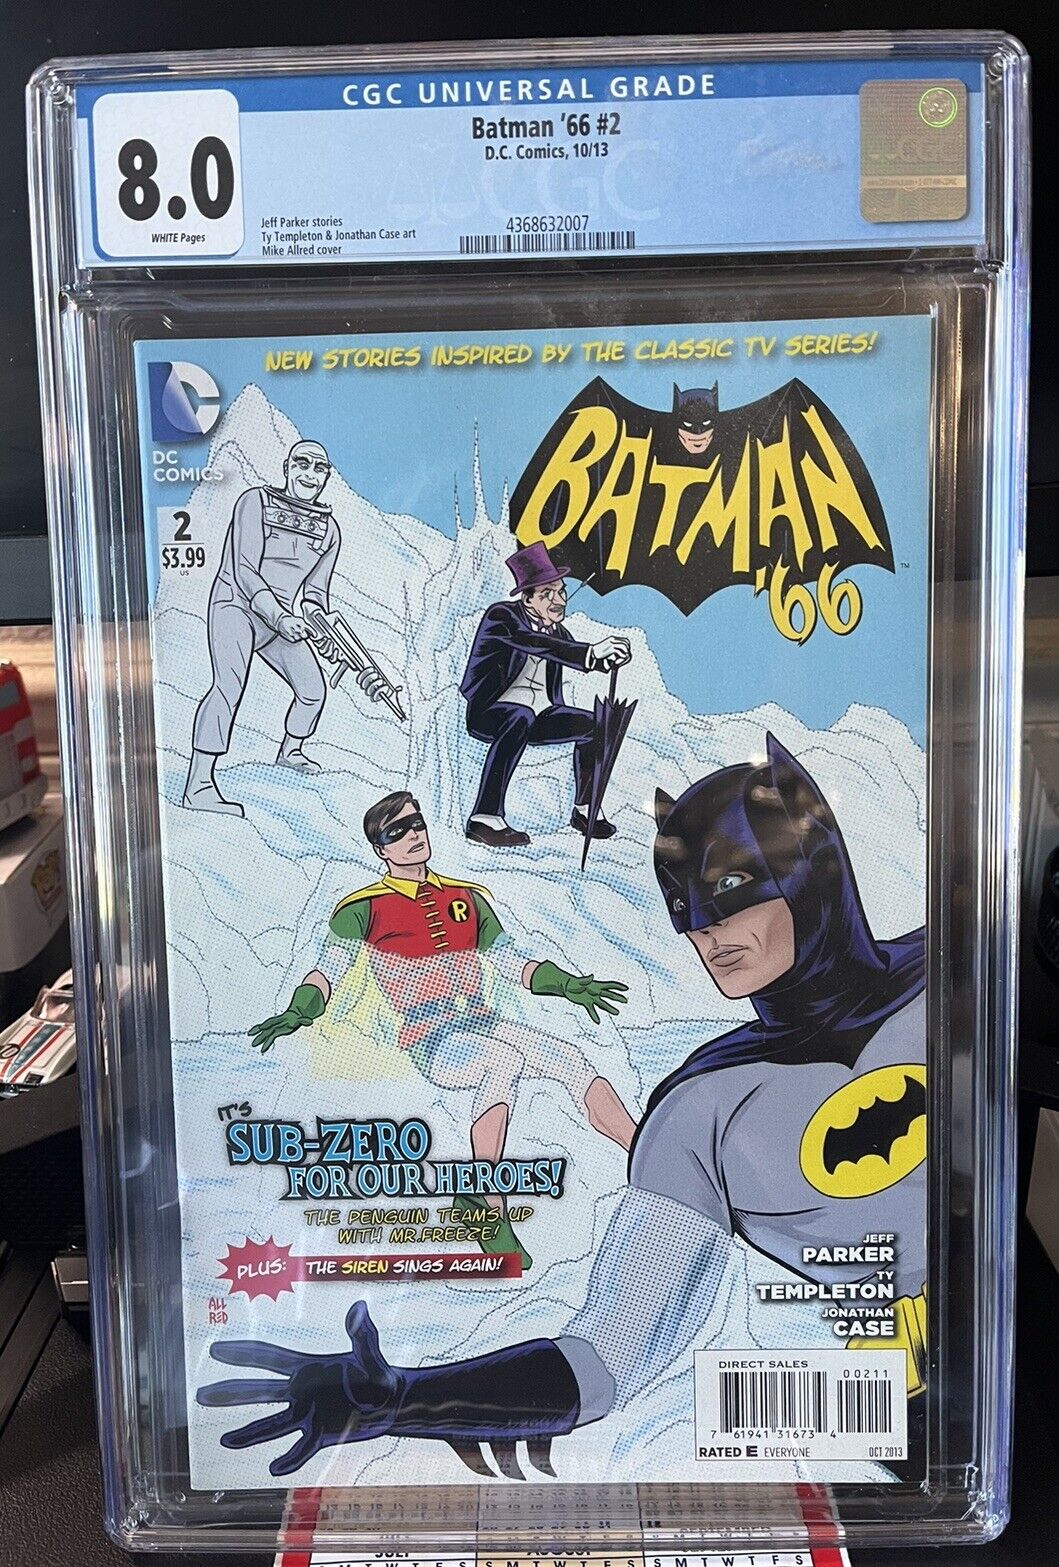 BATMAN '66 # 2 * DC COMICS * 2013 * CGC 8.0